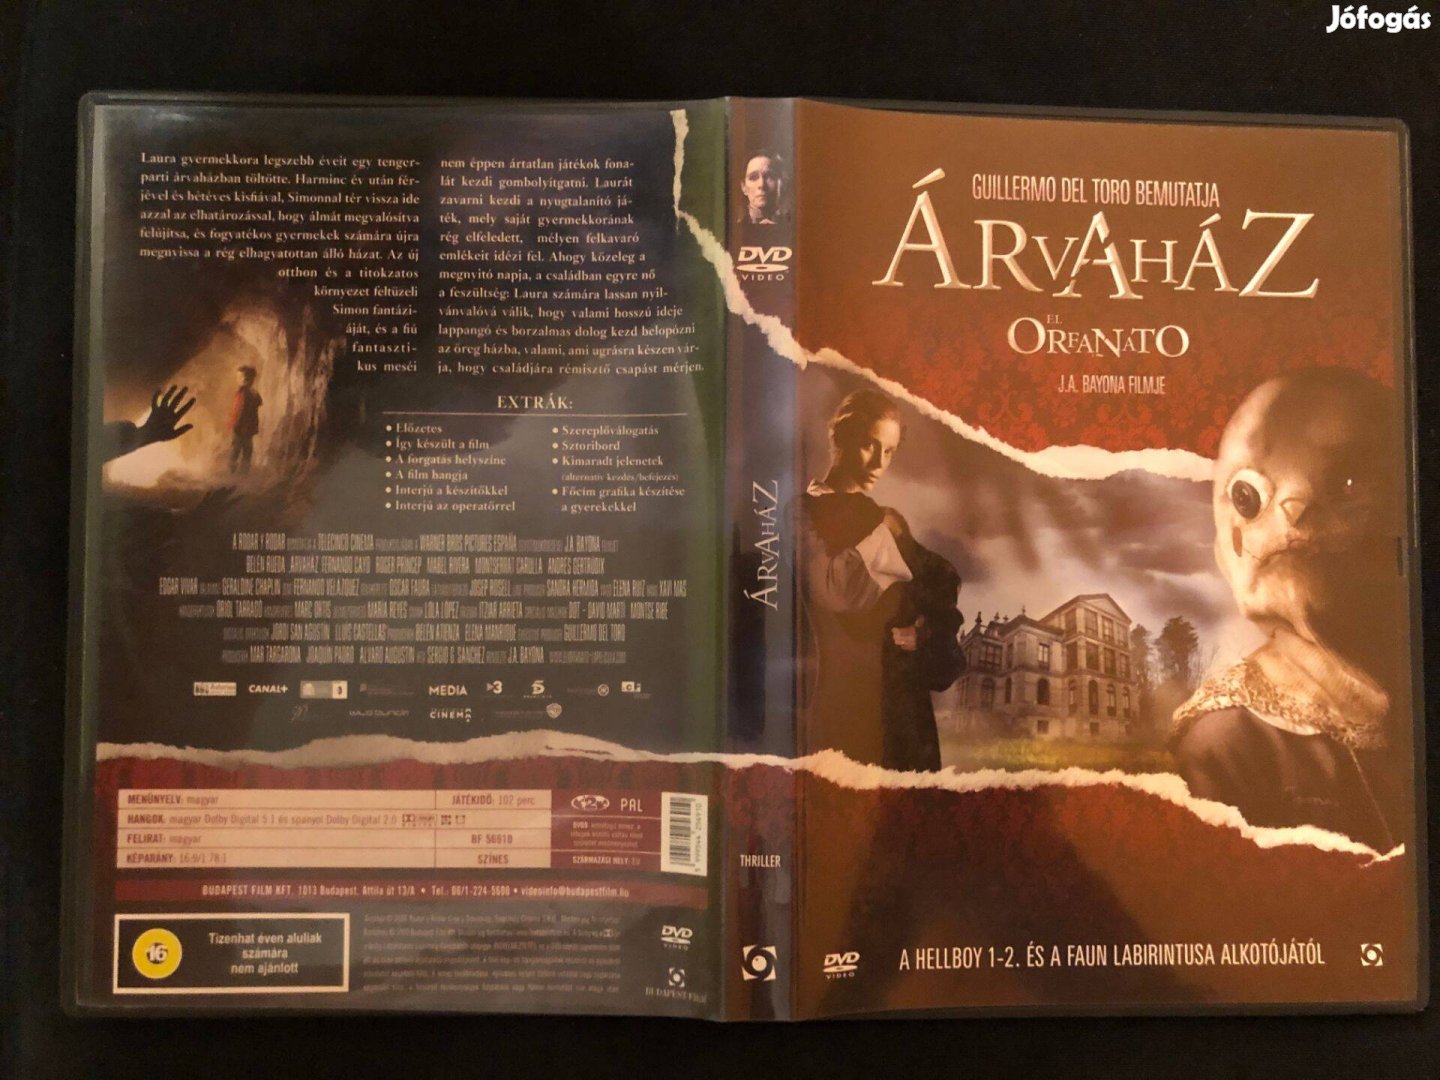 Árvaház El Orfanato (karcmentes, Guillermo Del Toro) DVD